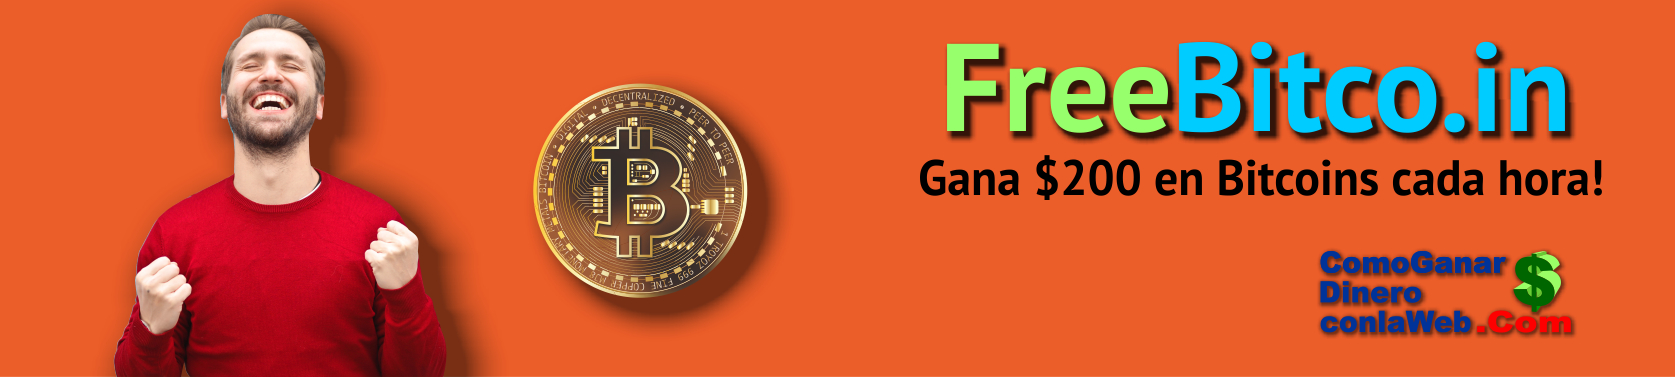 Gana Dinero con Freebitcoin Bitcoins Gratis